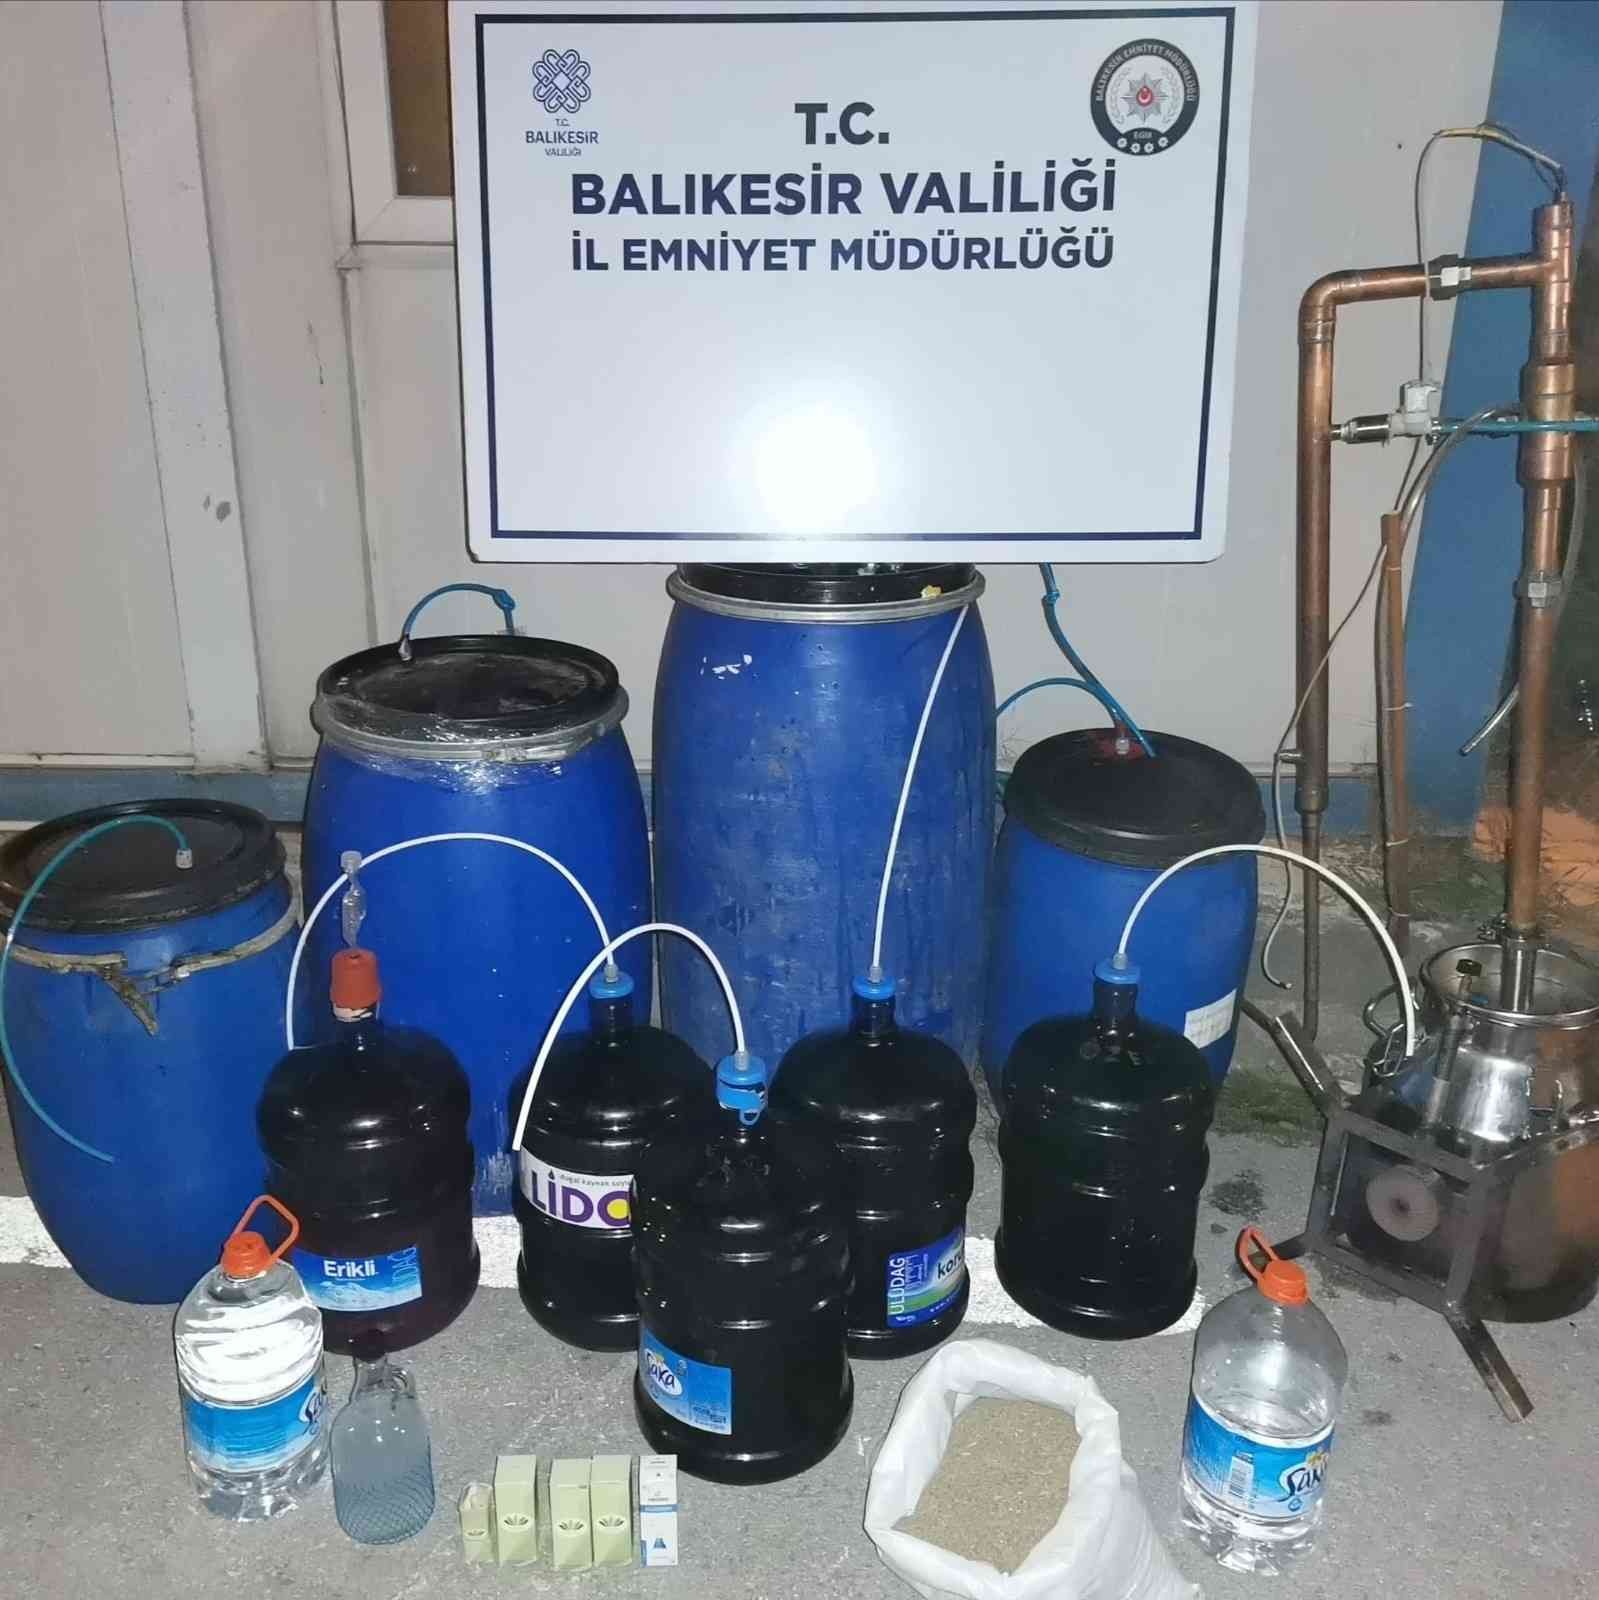 Bandırma kaçak alkol operasyonu #balikesir